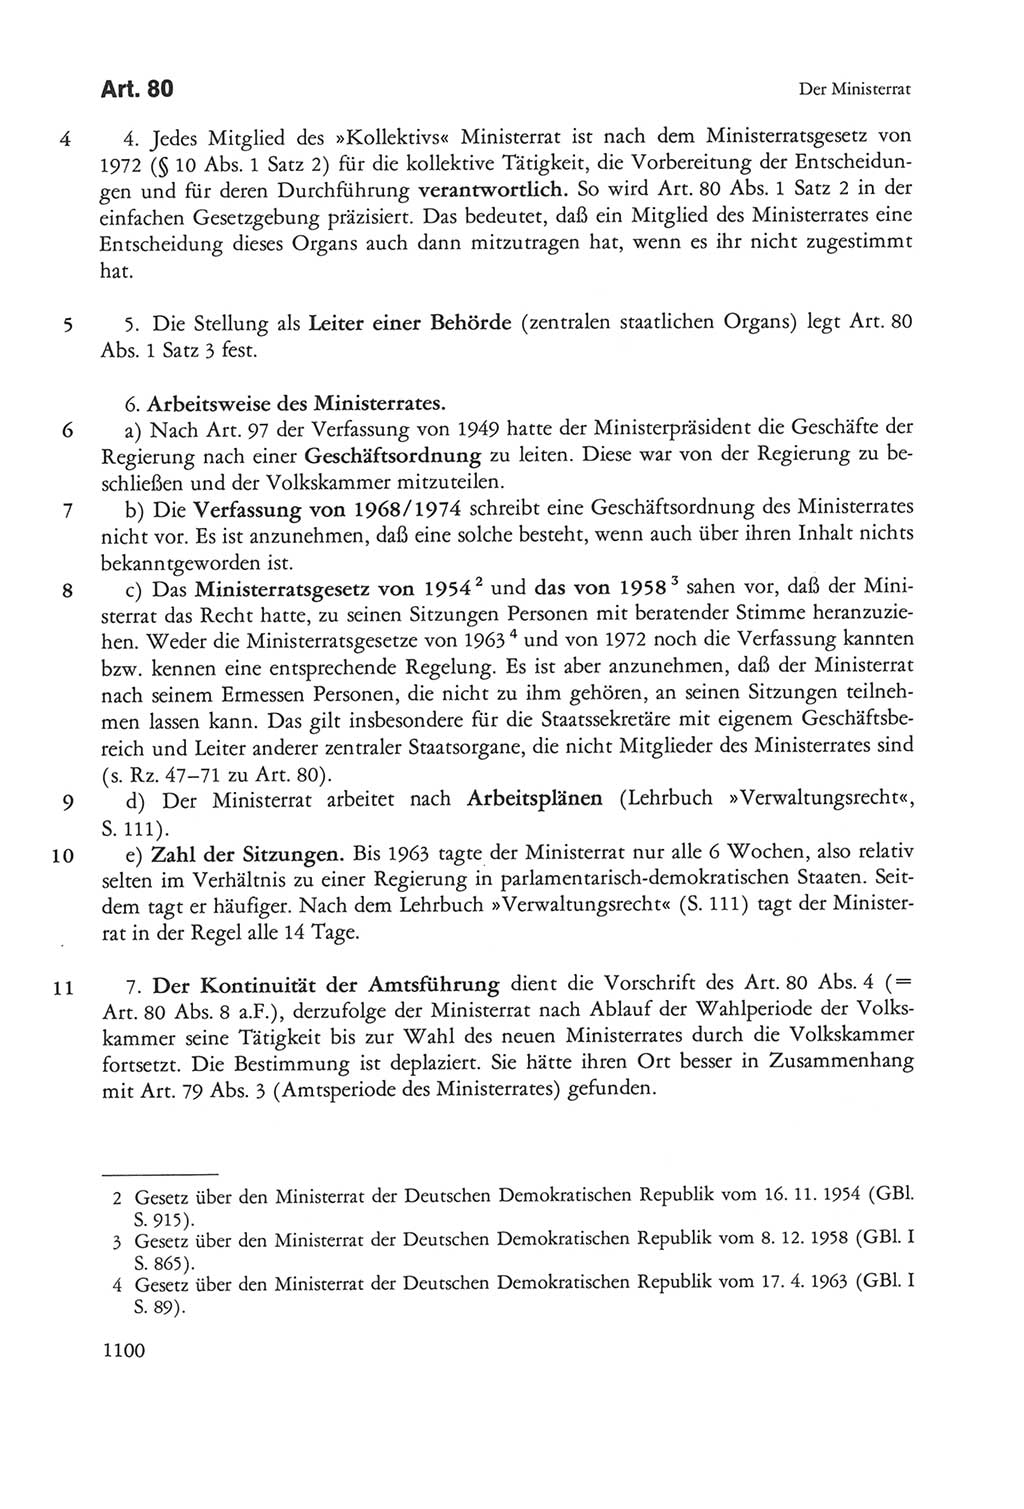 Die sozialistische Verfassung der Deutschen Demokratischen Republik (DDR), Kommentar 1982, Seite 1100 (Soz. Verf. DDR Komm. 1982, S. 1100)